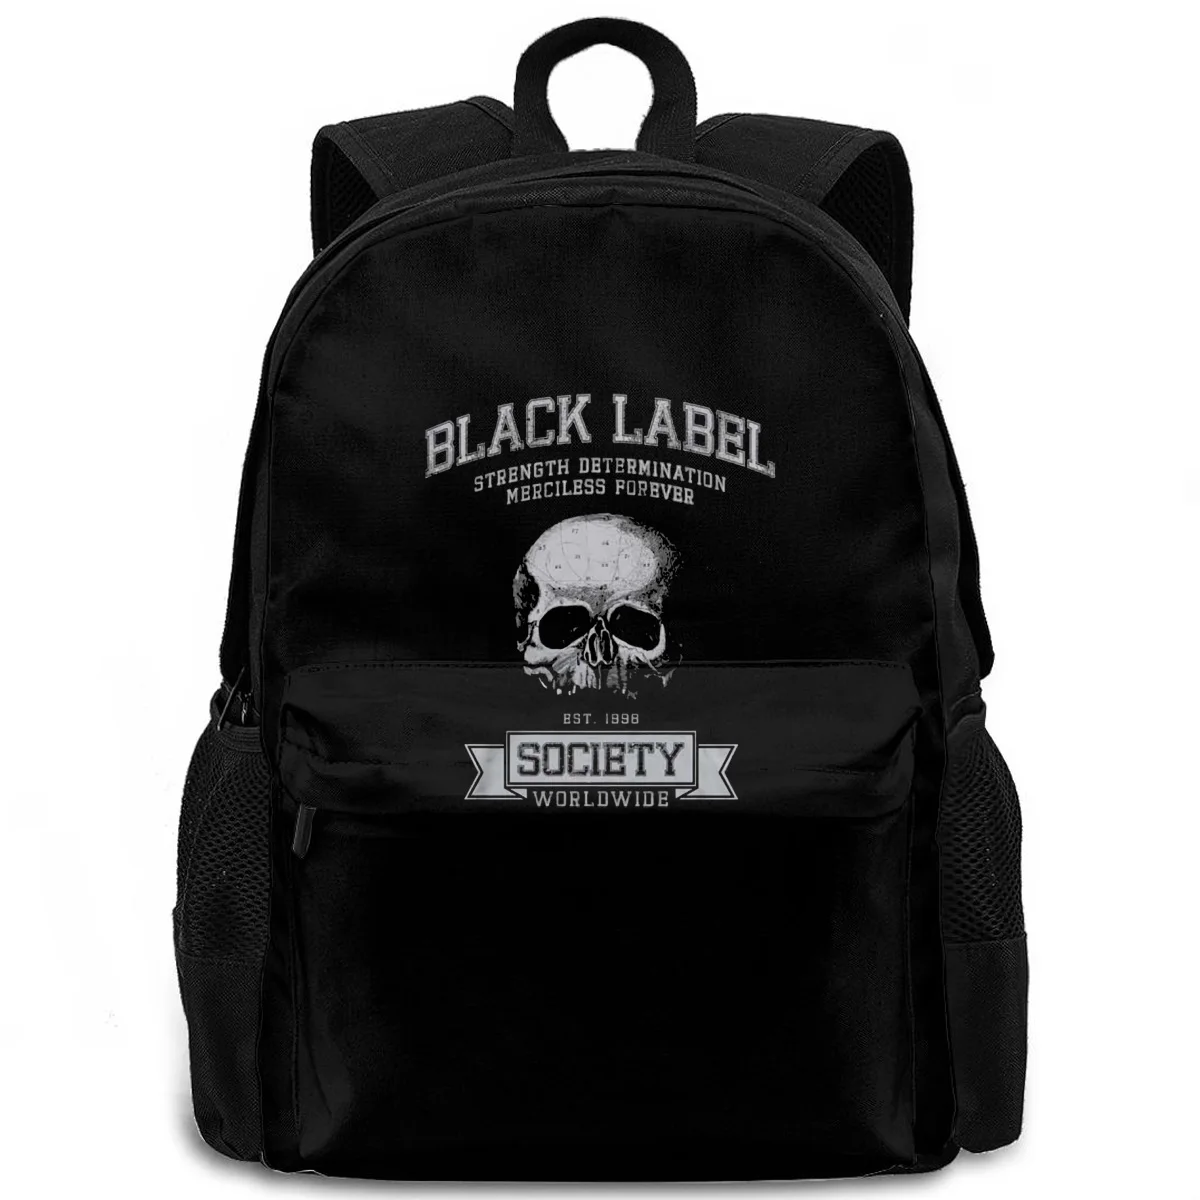 

Black Label Society Zakk Wylde Est 1998 ufficiale Uomo maglietta unisex Low Price For n Boys women men backpack laptop